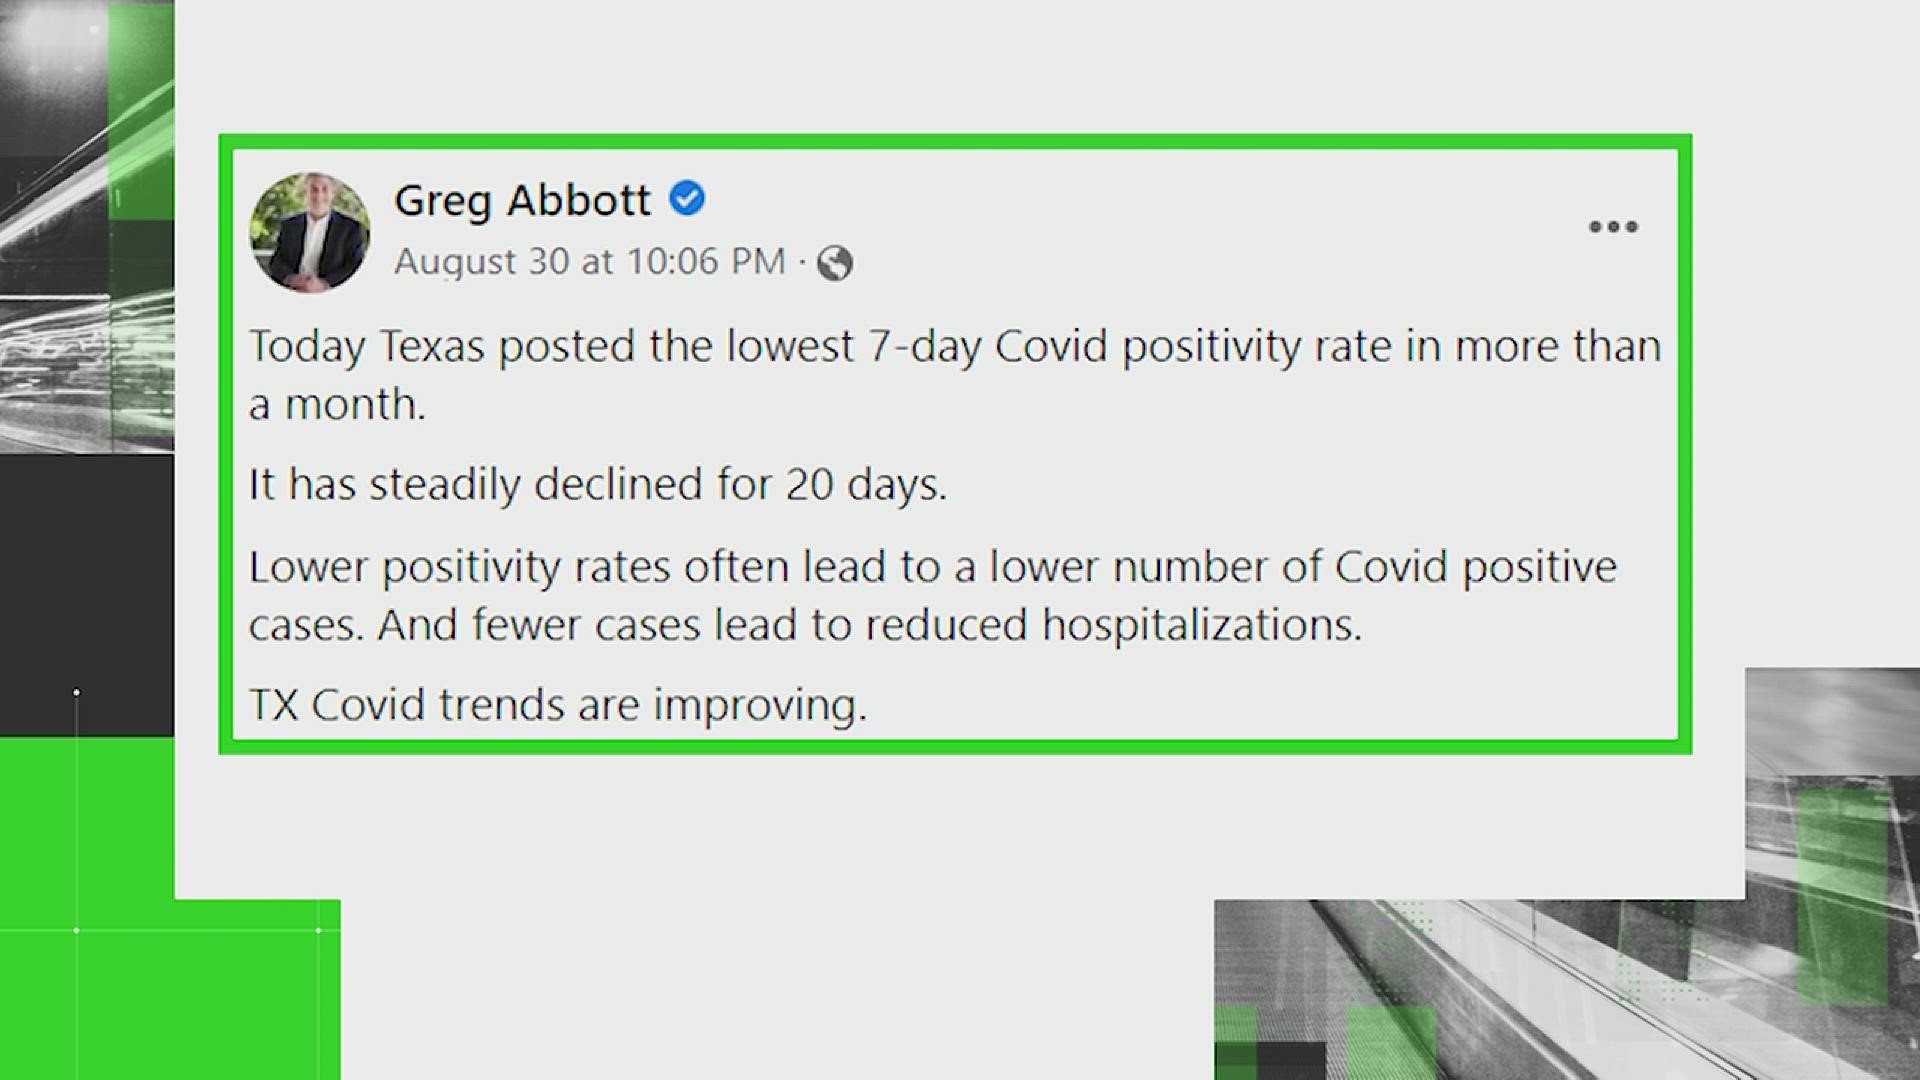 Gov. Greg Abbott made the claim on social media on August 30